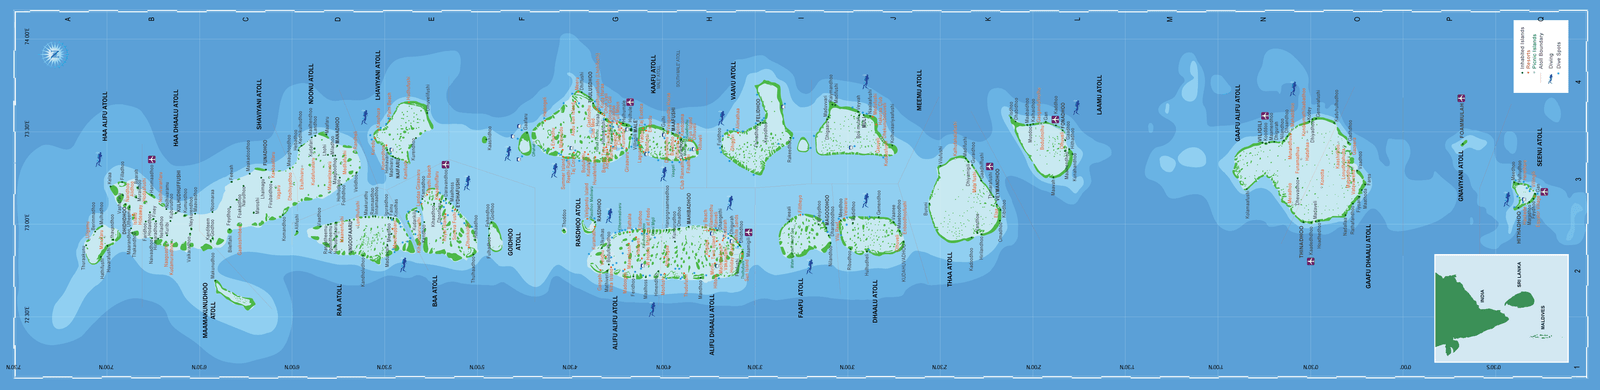 Maldives Map Details